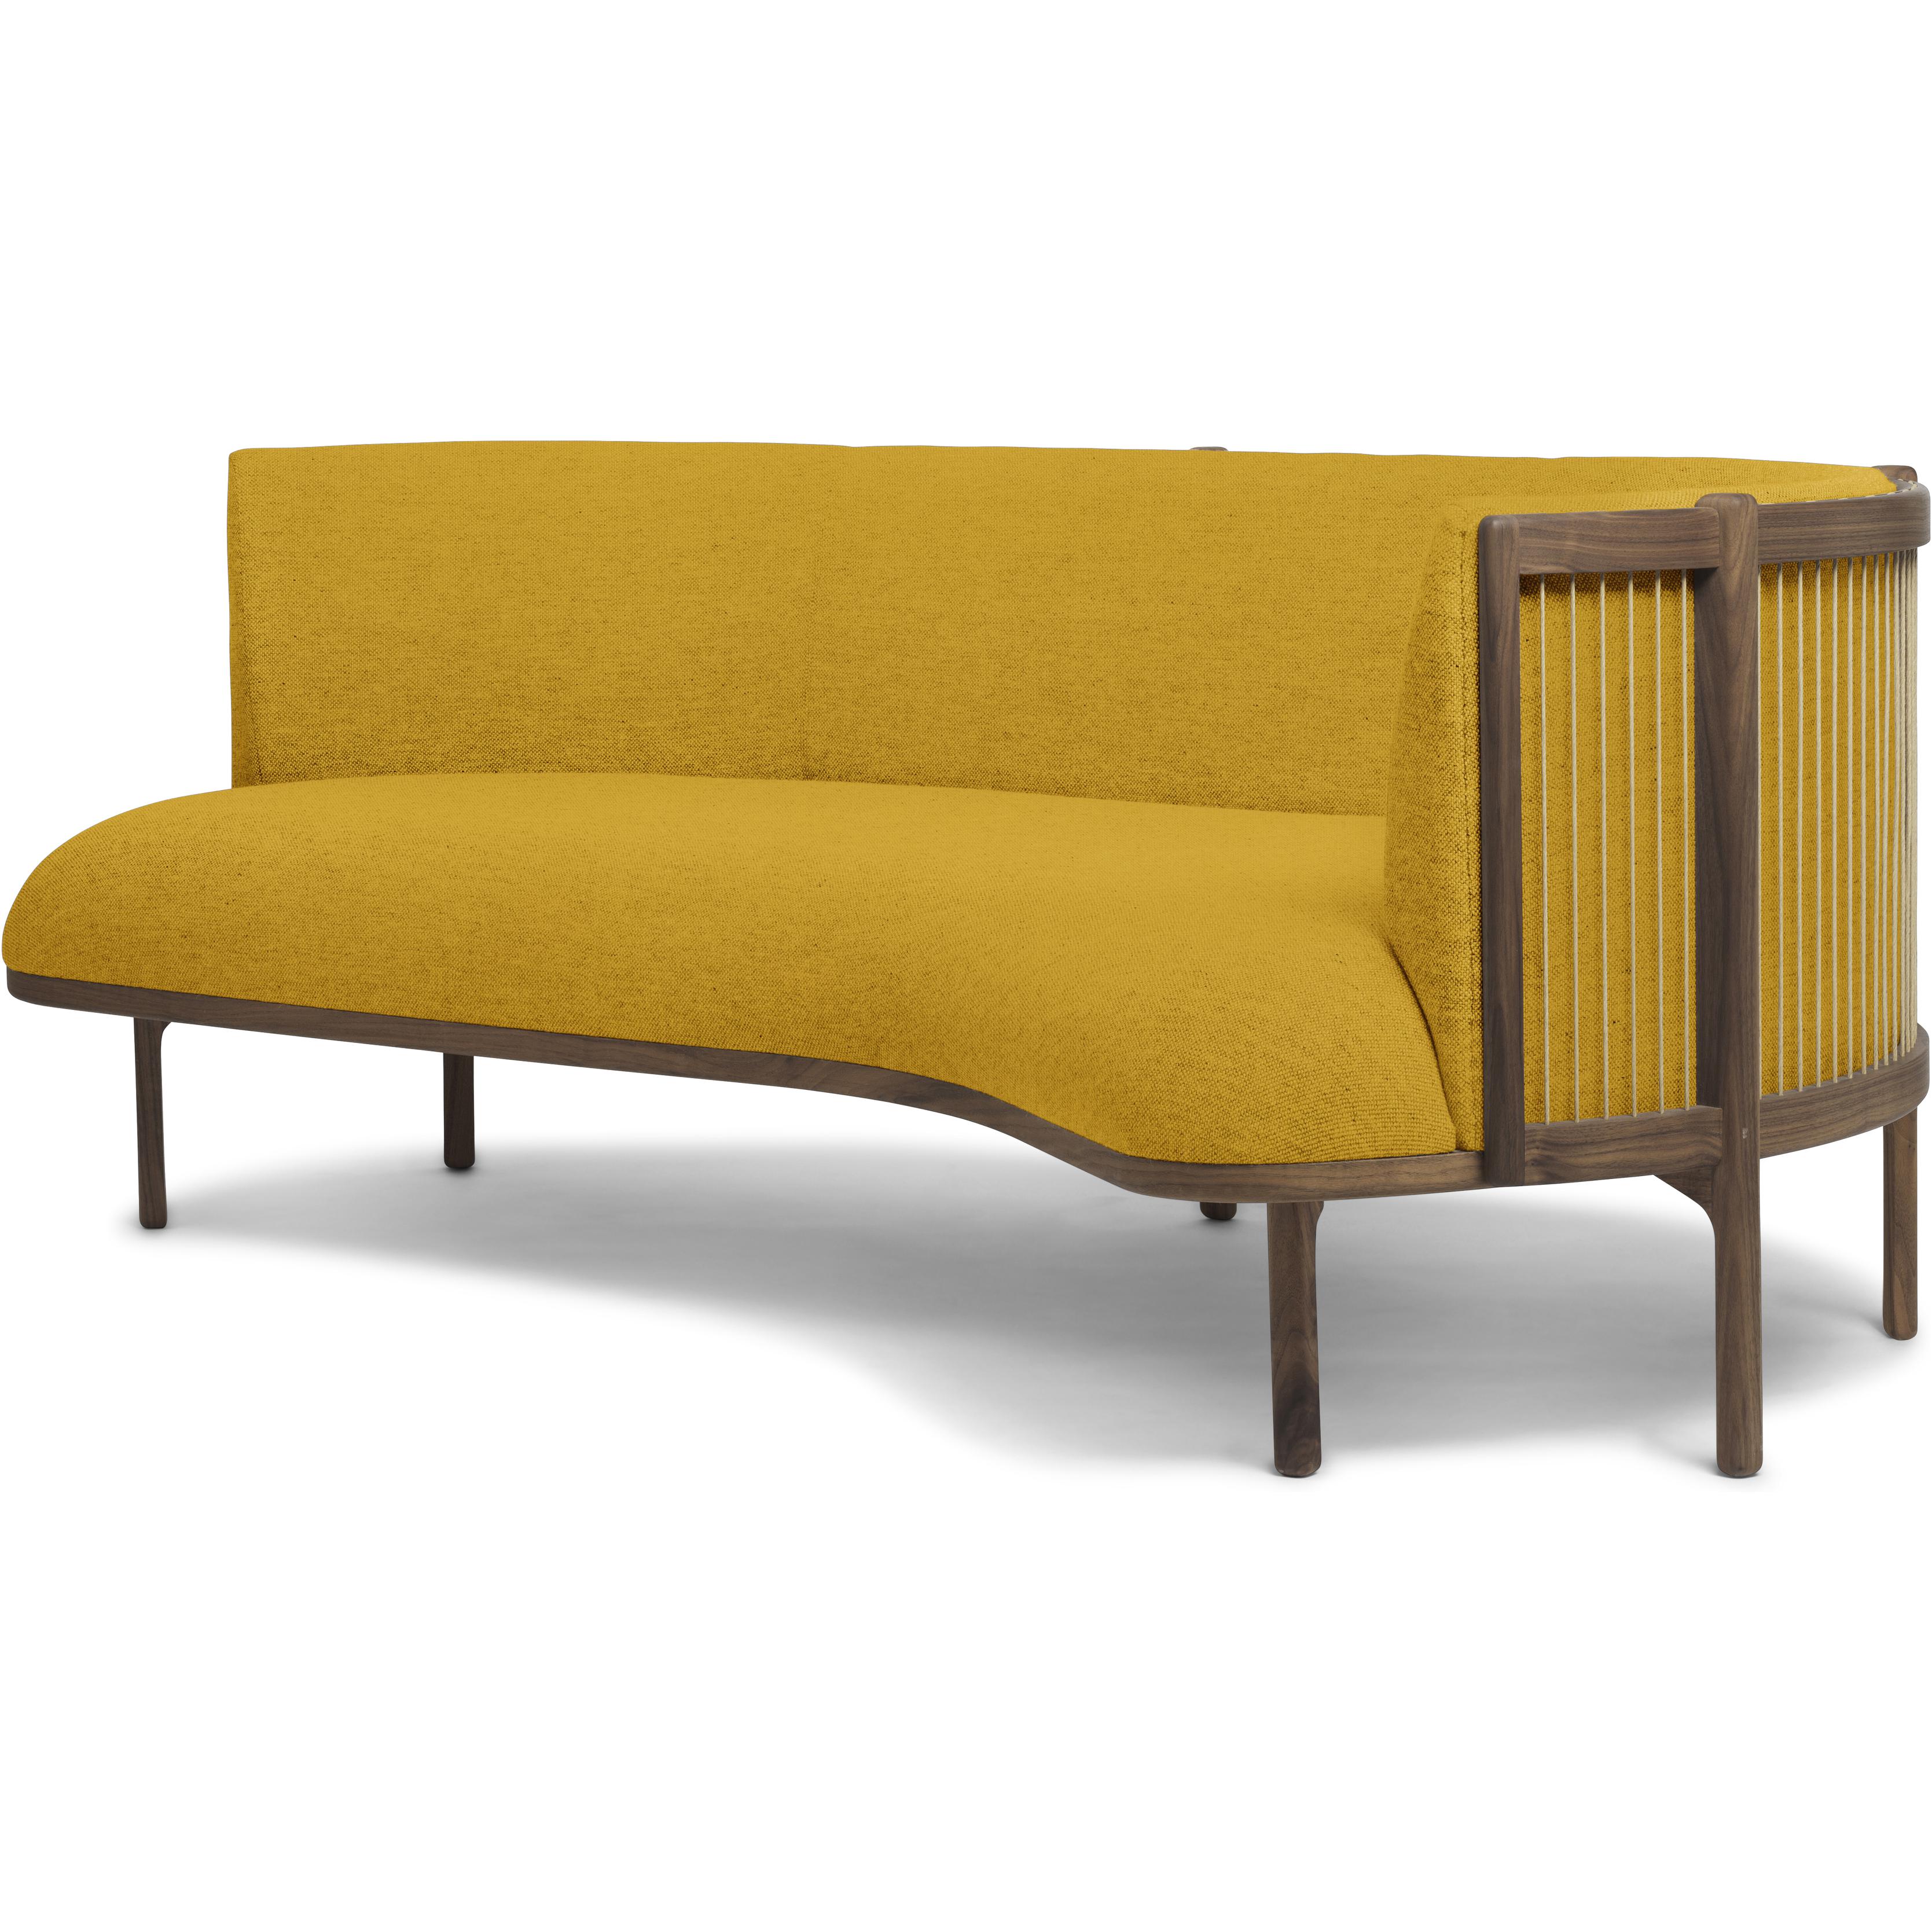 Carl Hansen RF1903 R Sideways Sofa 3 plazas de aceite de nogal derecha/Hallingdal 457 Fabic, amarillo/marrón natural